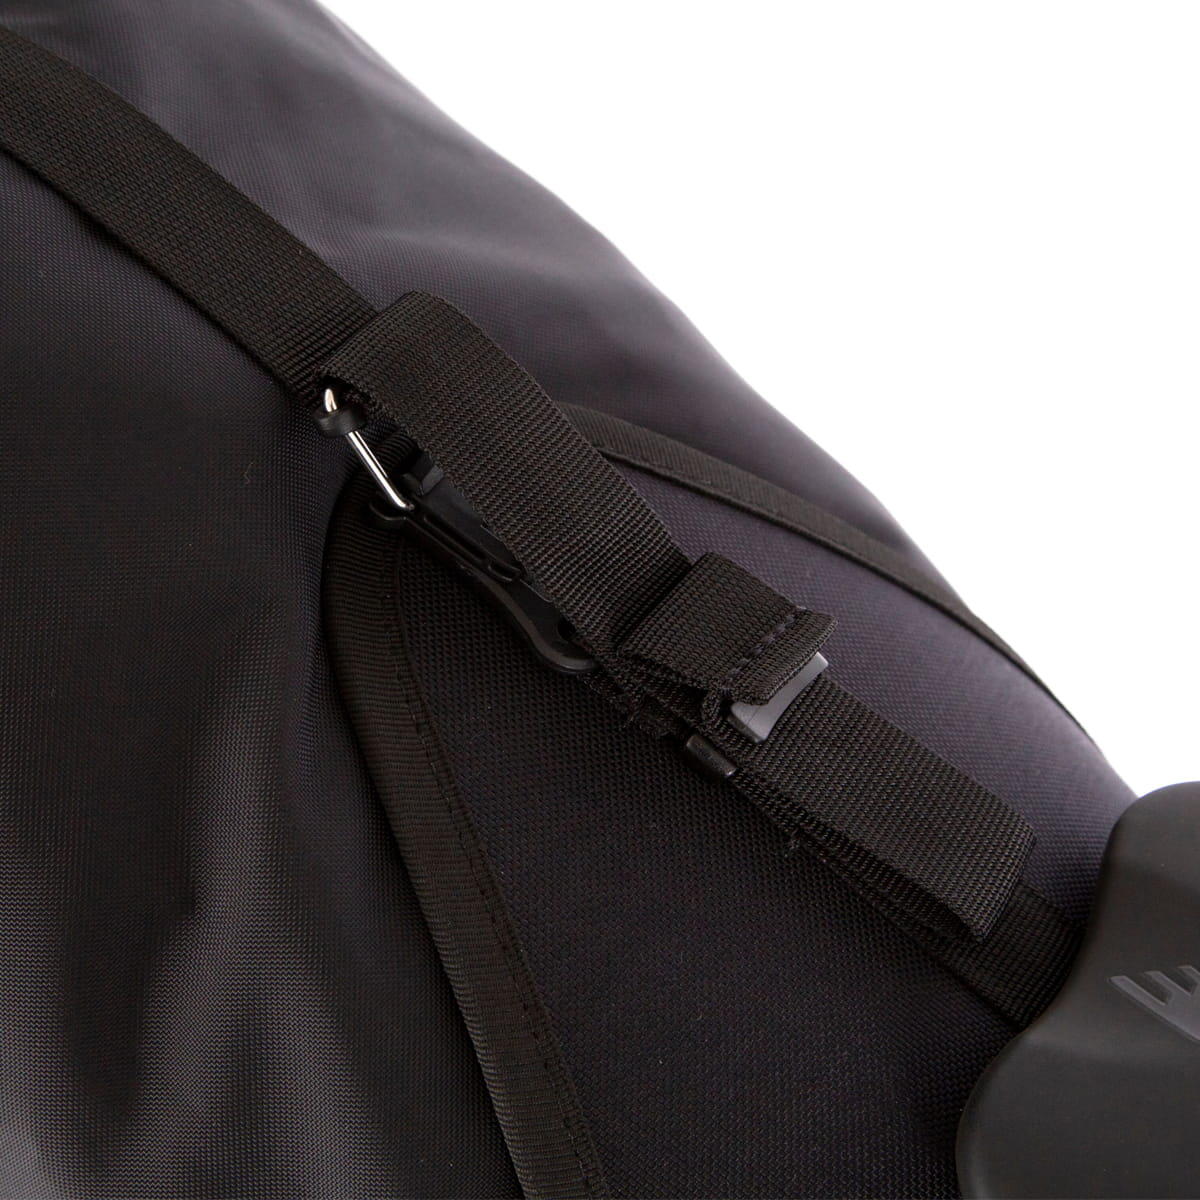 Saddle Bag male cycling luggage, black 4/5